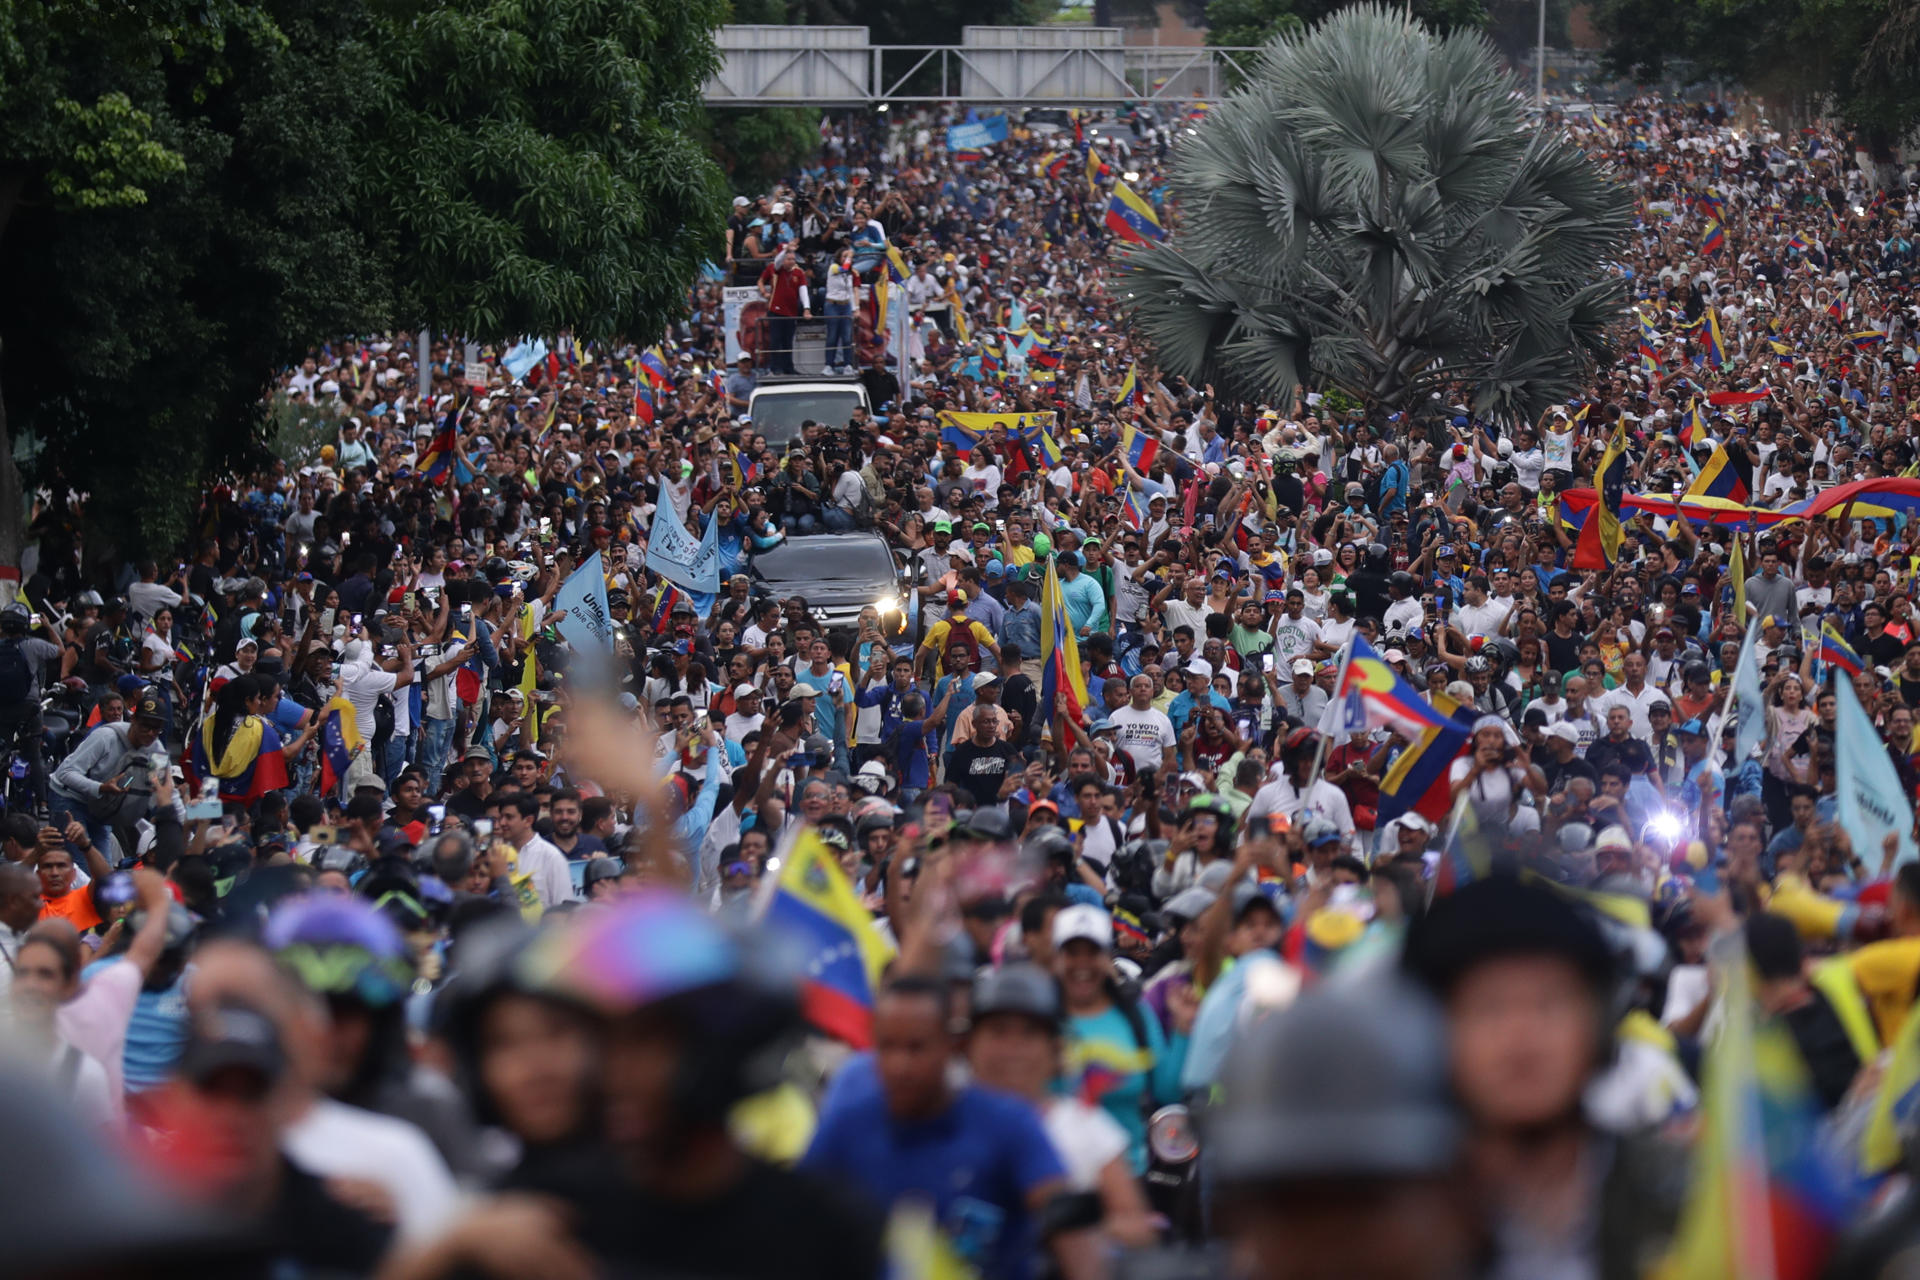 El Mundo: Campaña electoral histórica en Venezuela, pulso definitivo entre la esperanza popular y el Estado “tramposo”